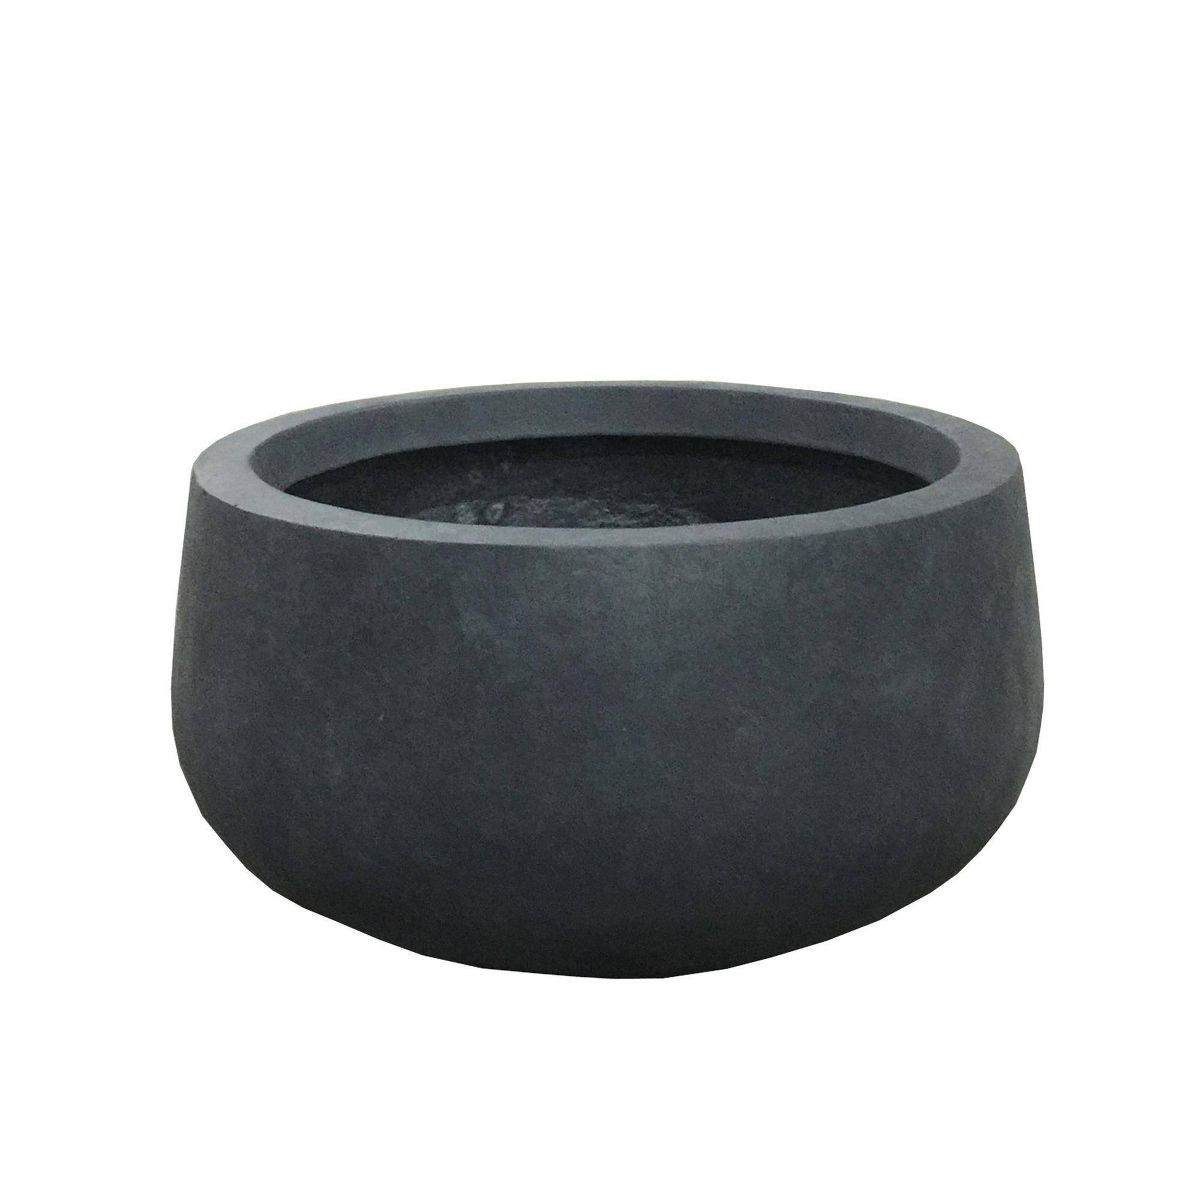 Rosemead Home & Garden, Inc. 16" Wide Kante Lightweight Concrete Outdoor Bowl Planter Pot Charcoa... | Target